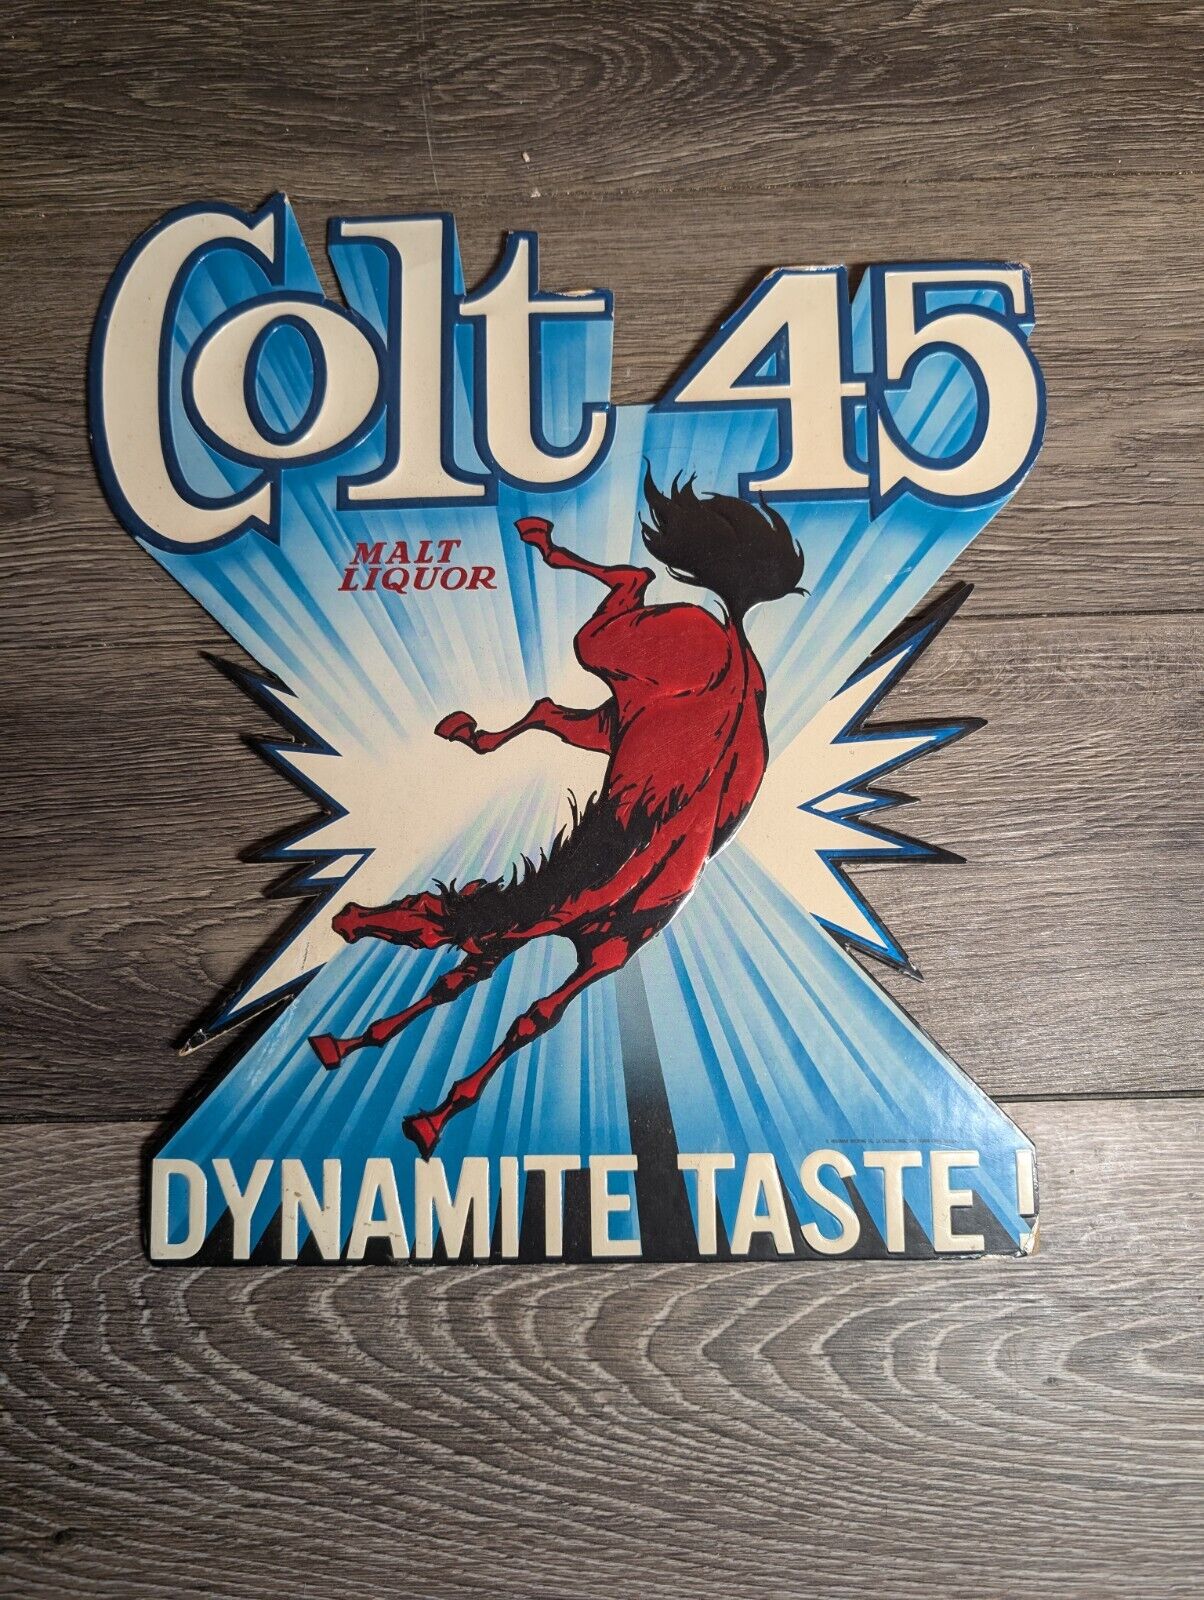 Colt 45 Malt Liquor Foil Cardboard Back Bar Beer Sign ManCave “Dynamite Taste”